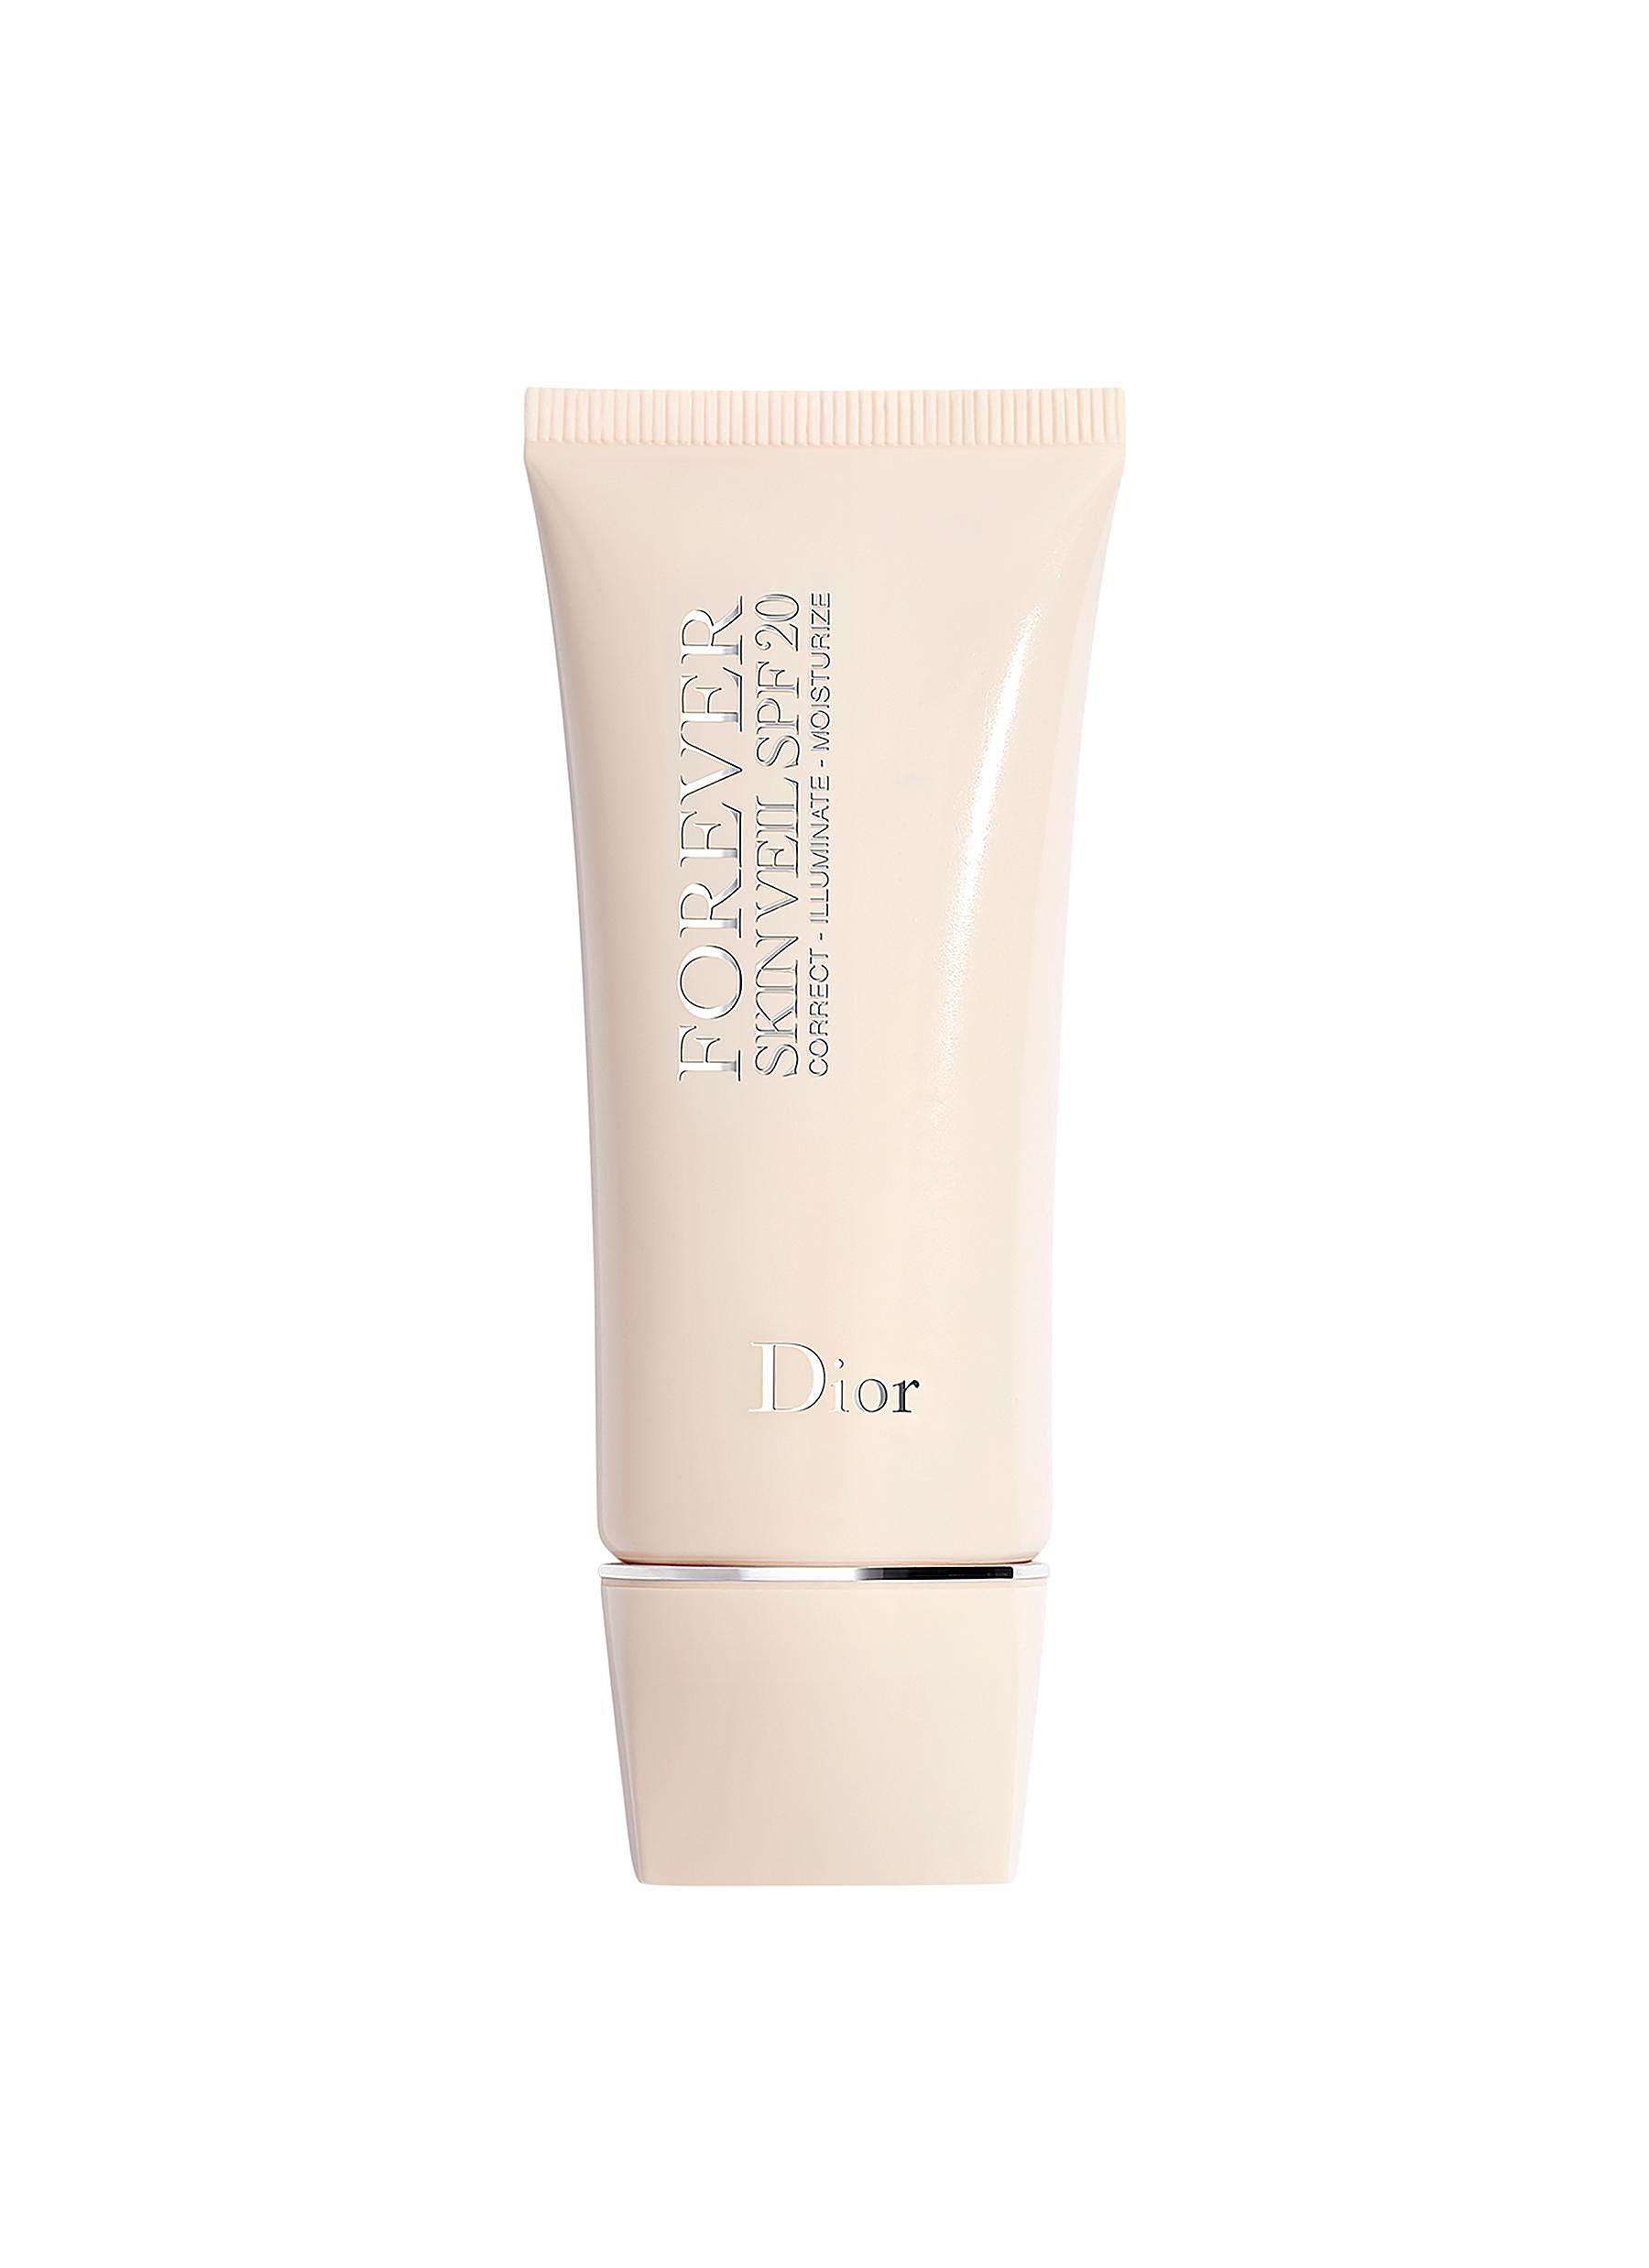 Overgivelse Villig udslettelse DIOR BEAUTY | Dior Forever Skin Veil SPF 20 Makeup base 30ml | Beauty |  Lane Crawford